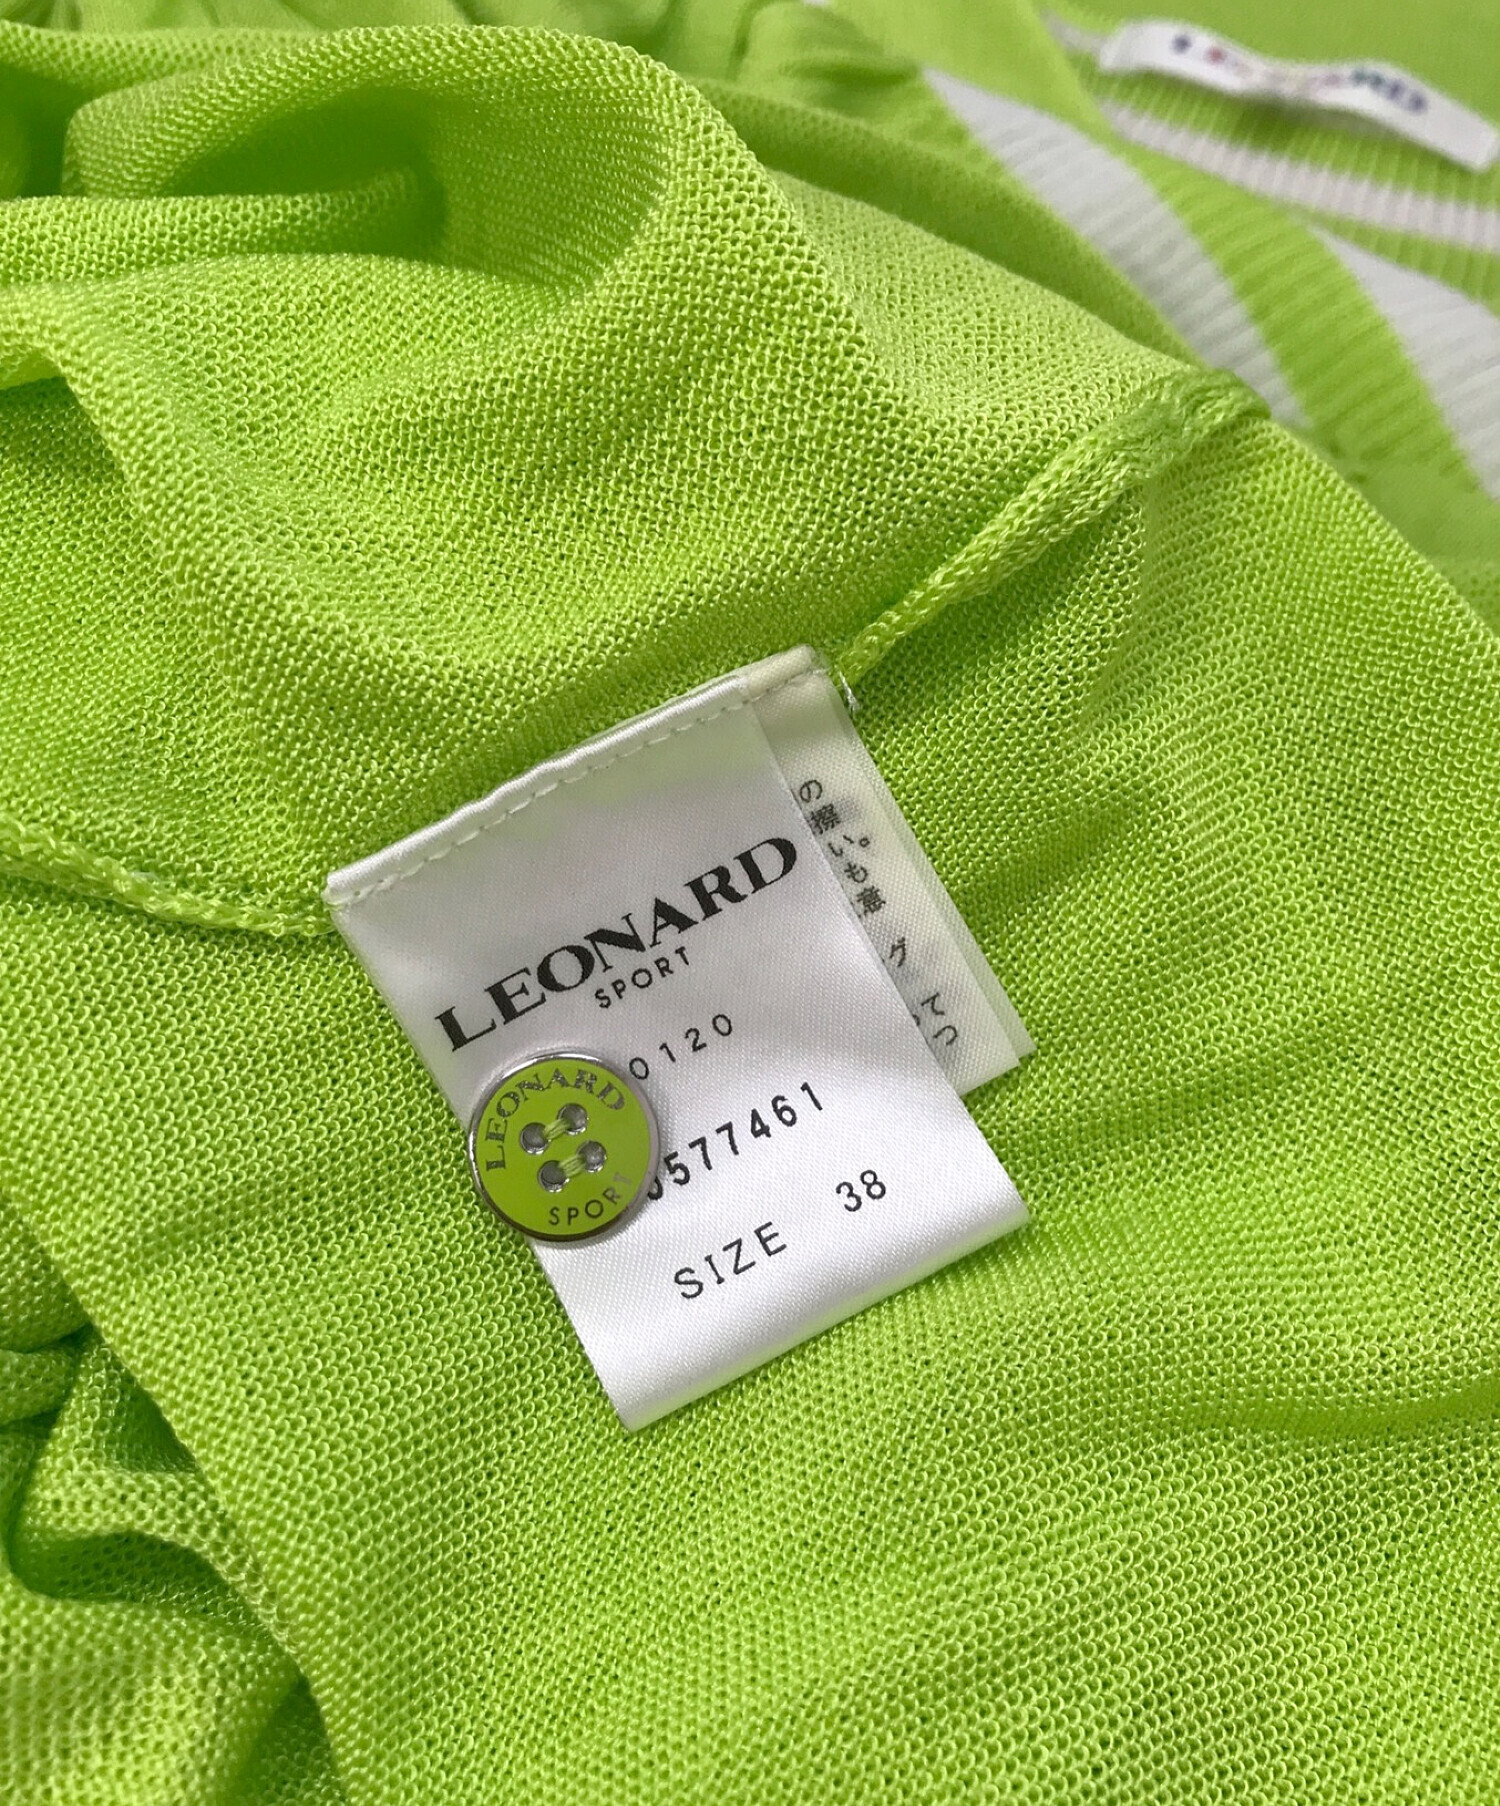 LEONARD SPORT (レオナール スポーツ) ポロシャツワンピース 黄緑 サイズ:38